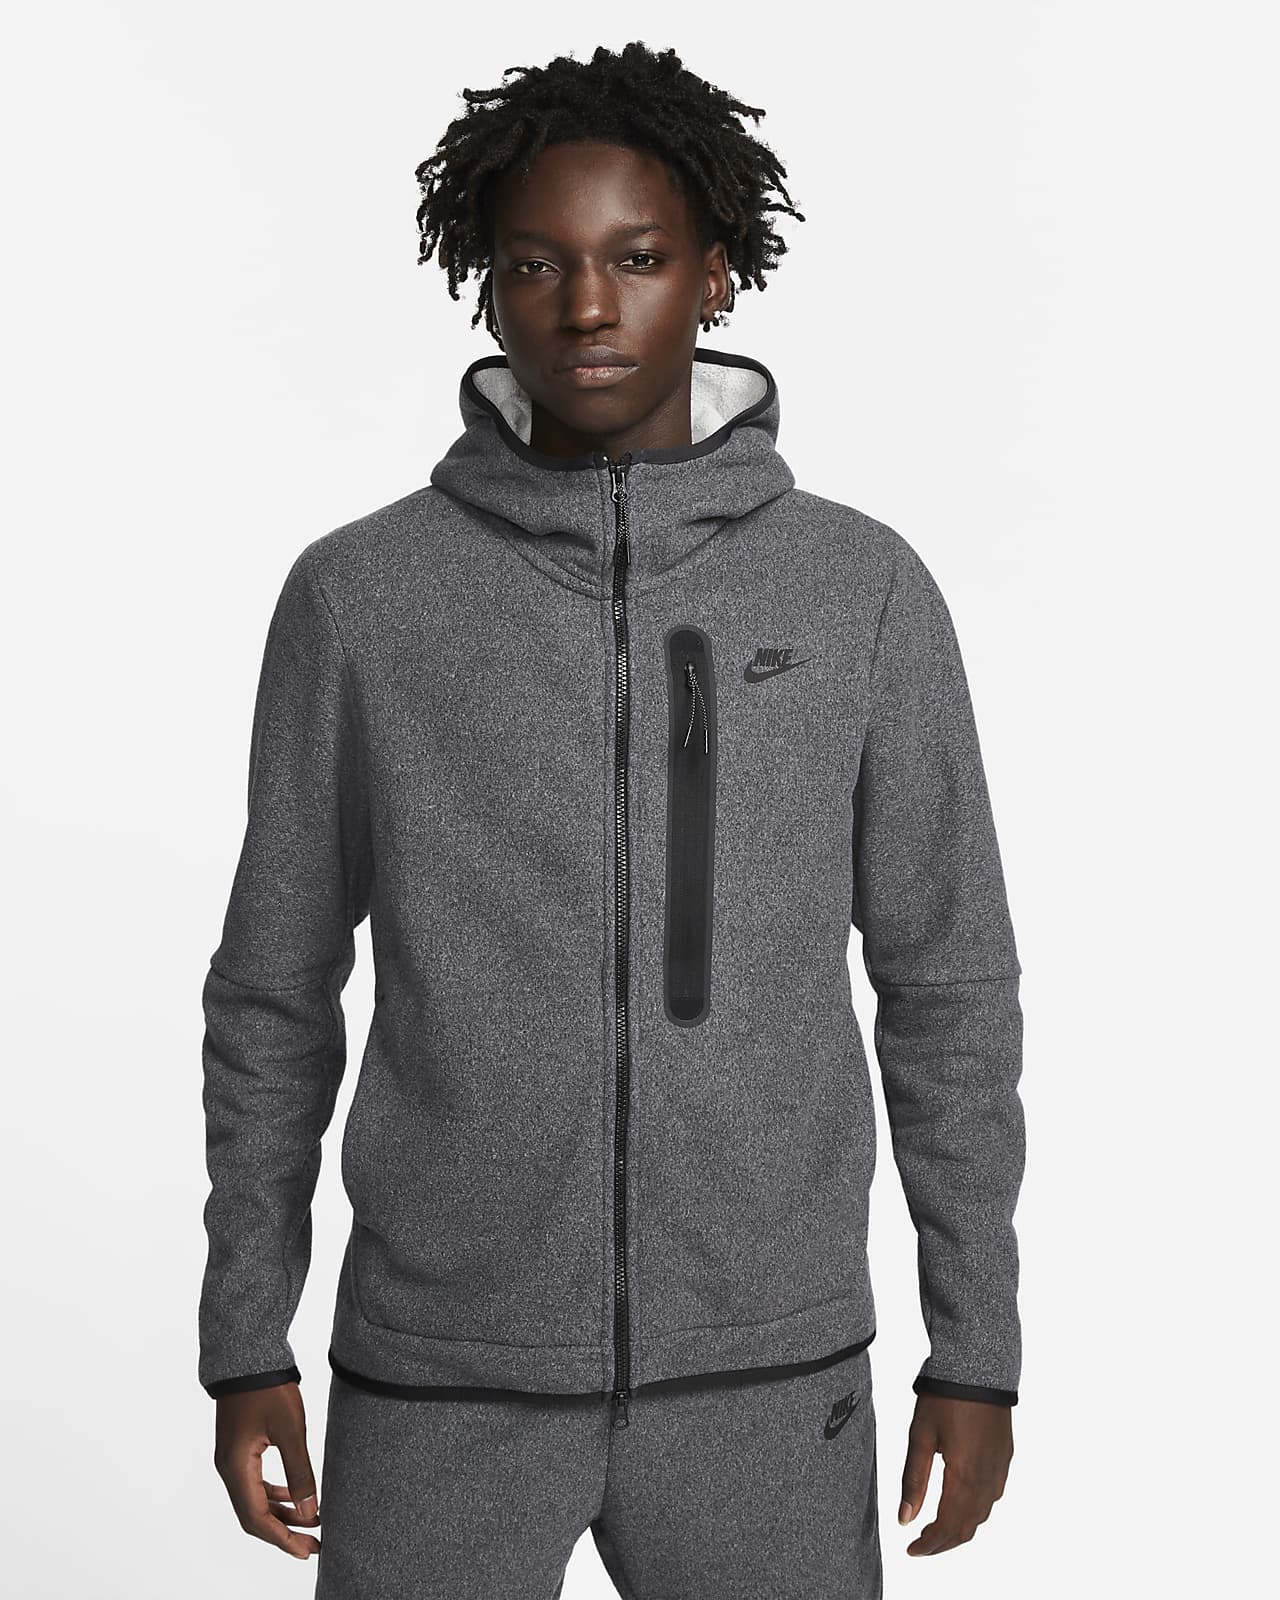 Verraad Donau Abnormaal Nike Sportswear Tech Fleece Winterse hoodie met rits voor heren. Nike BE